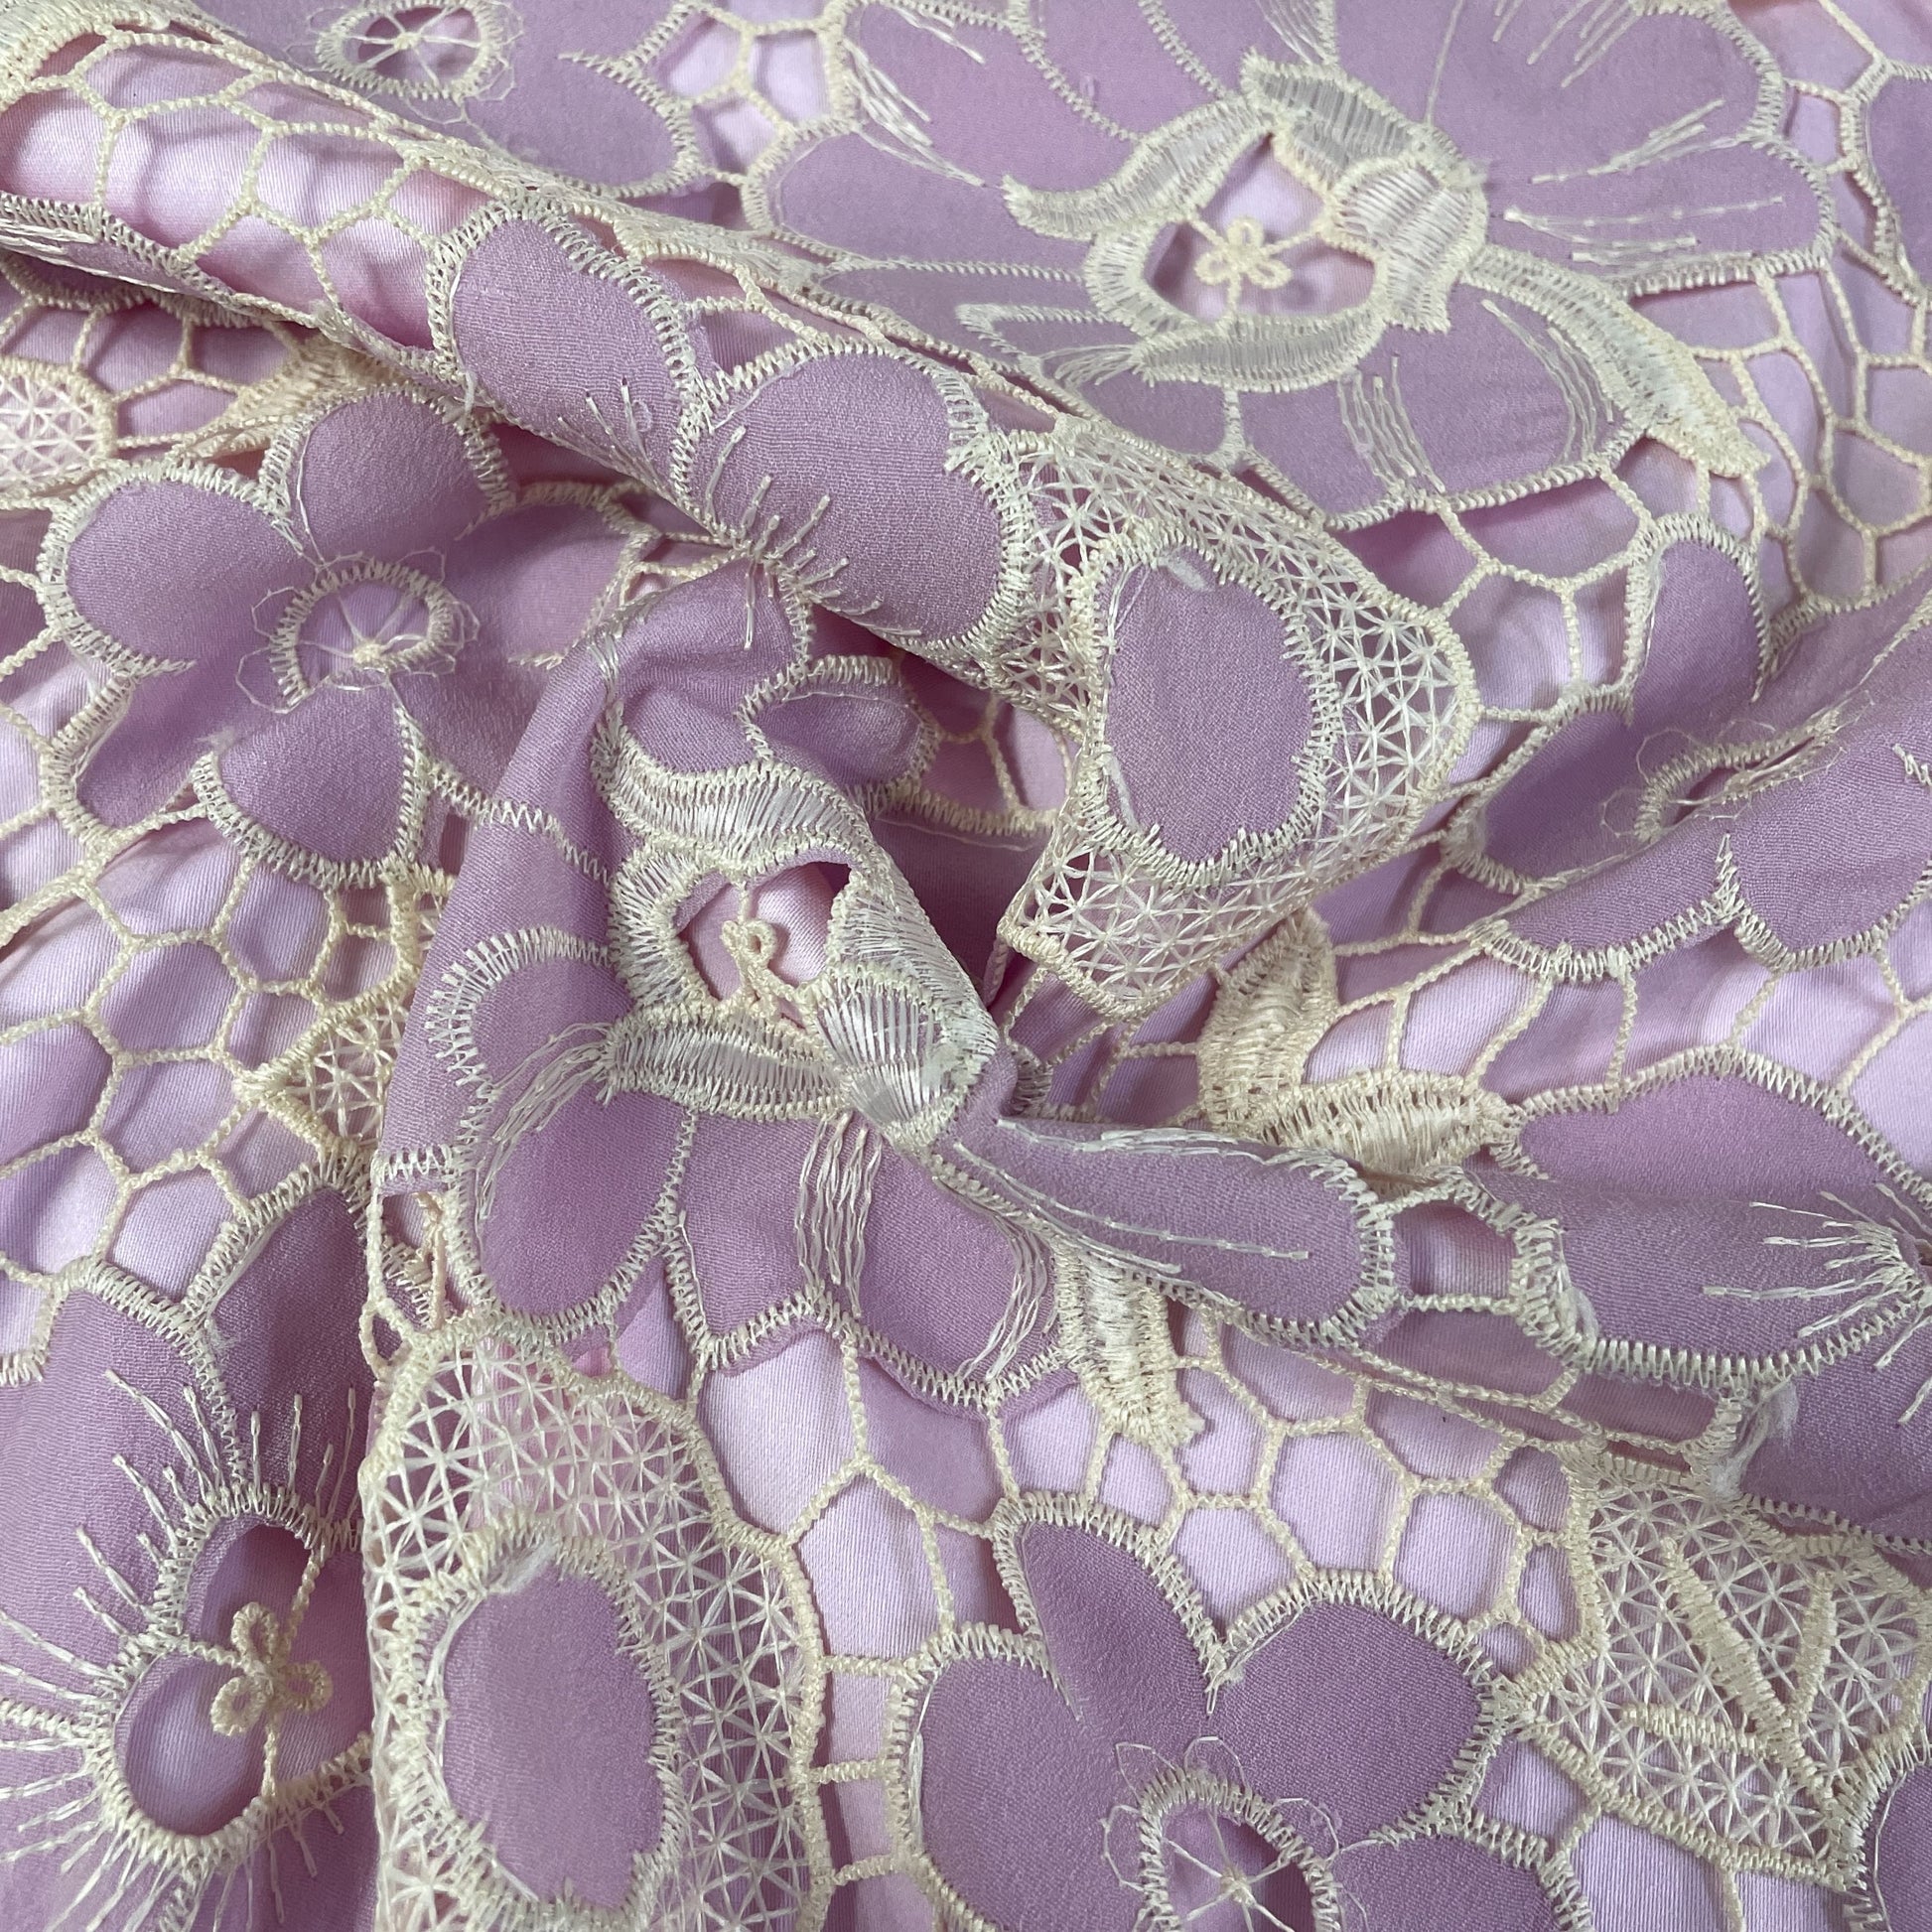 Premium Purple Floral Fabric Crepe Croshet Fabric